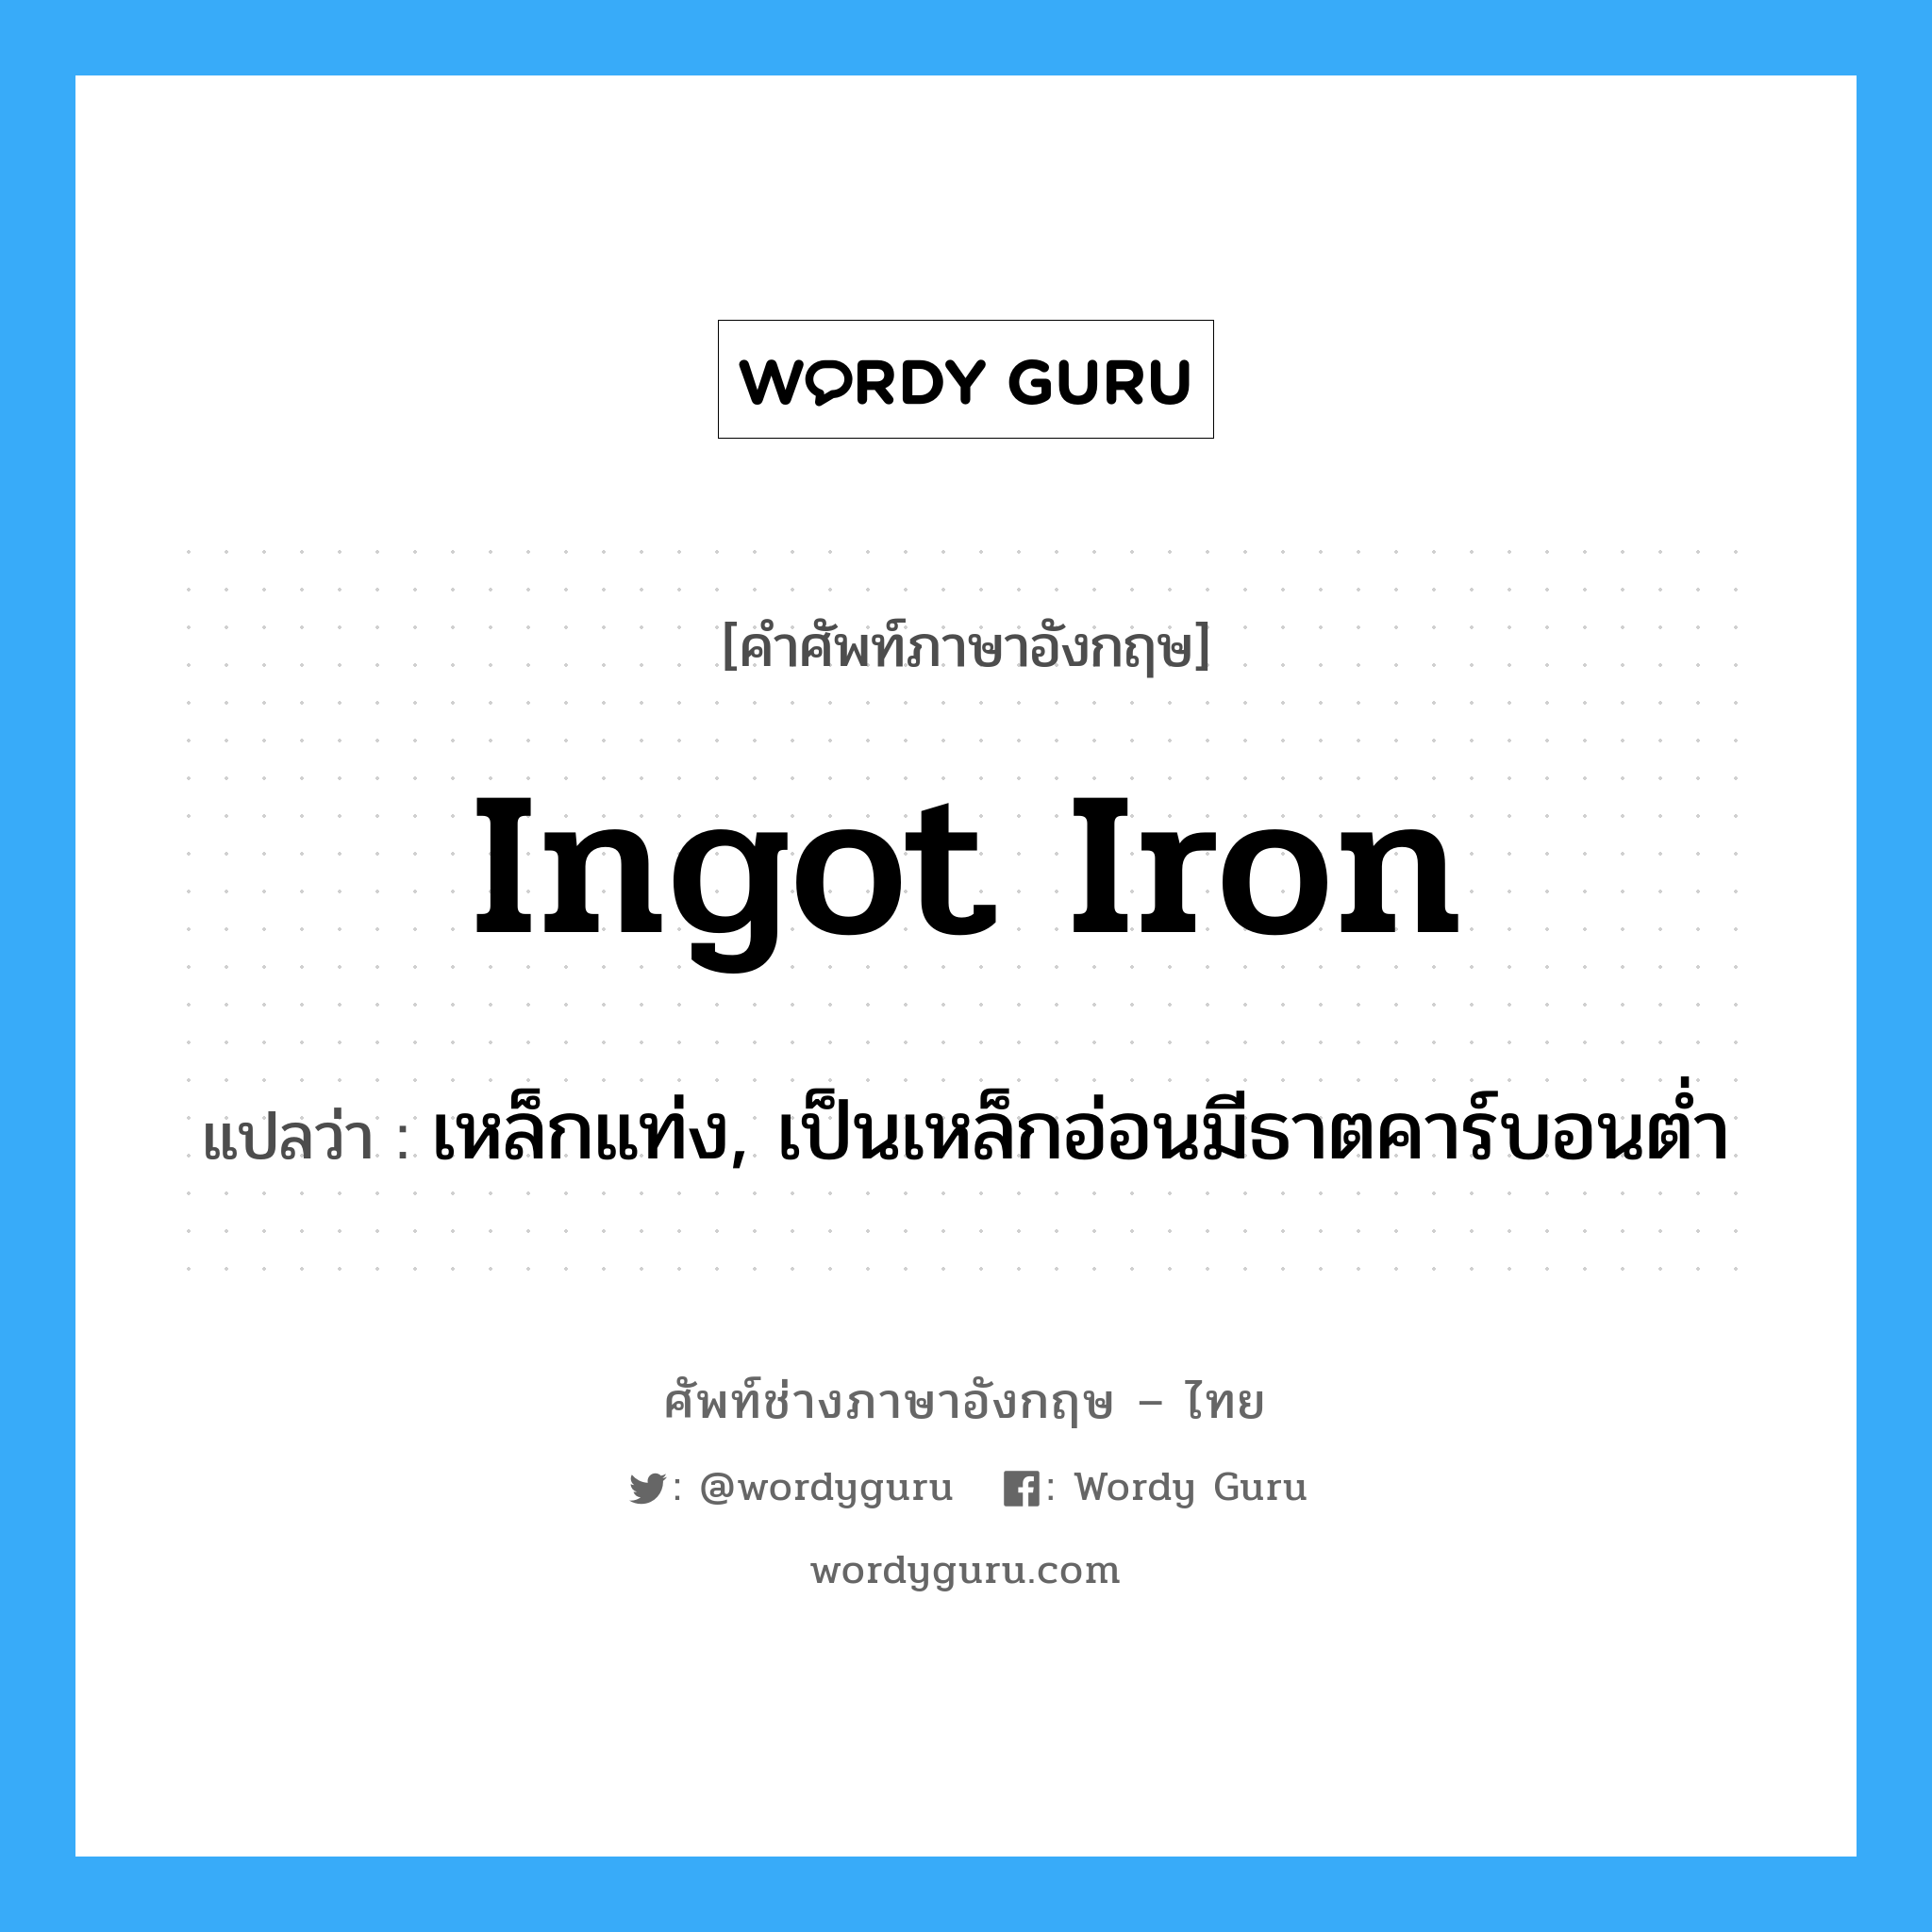 ingot iron แปลว่า?, คำศัพท์ช่างภาษาอังกฤษ - ไทย ingot iron คำศัพท์ภาษาอังกฤษ ingot iron แปลว่า เหล็กแท่ง, เป็นเหล็กอ่อนมีธาตคาร์บอนต่ำ